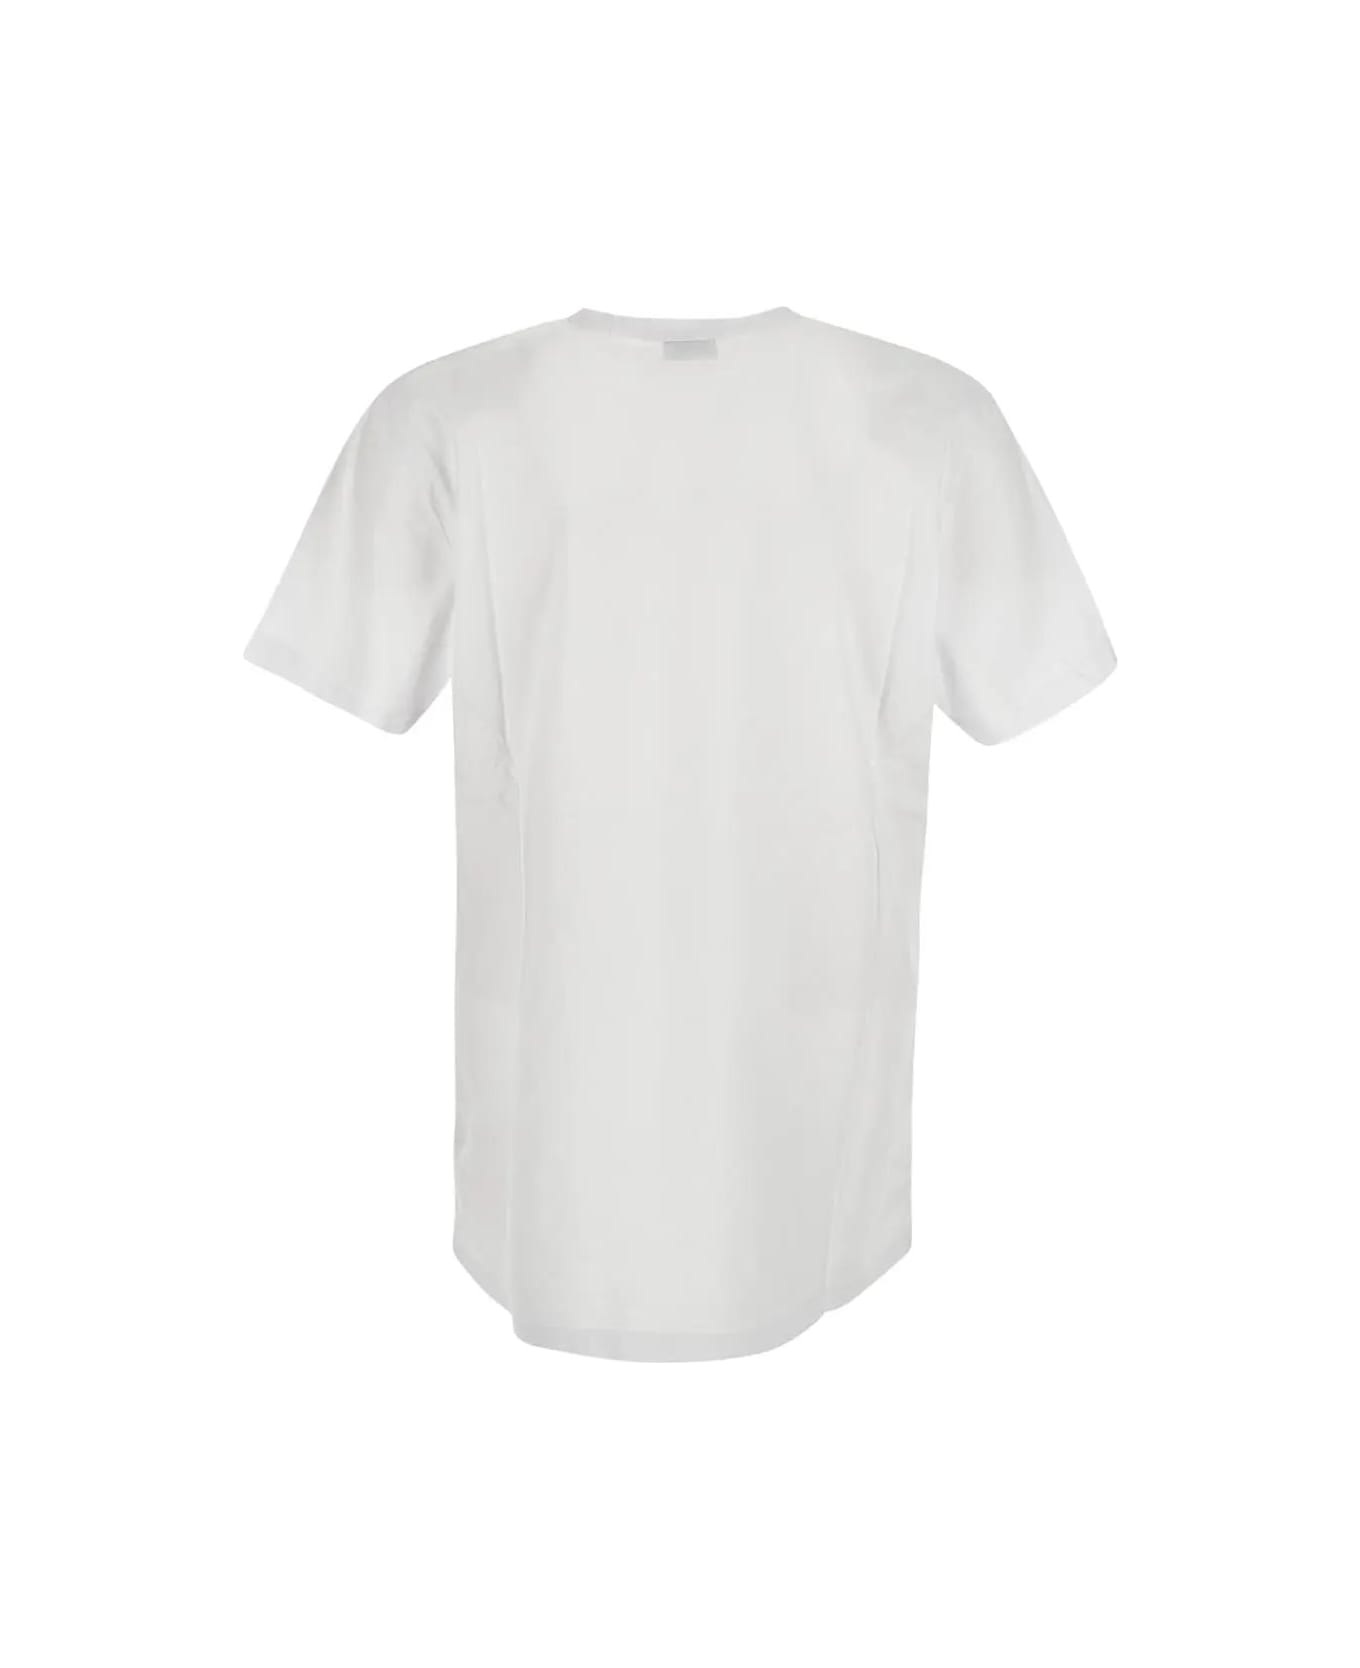 Woolrich Sheep T-shirt - Bright White